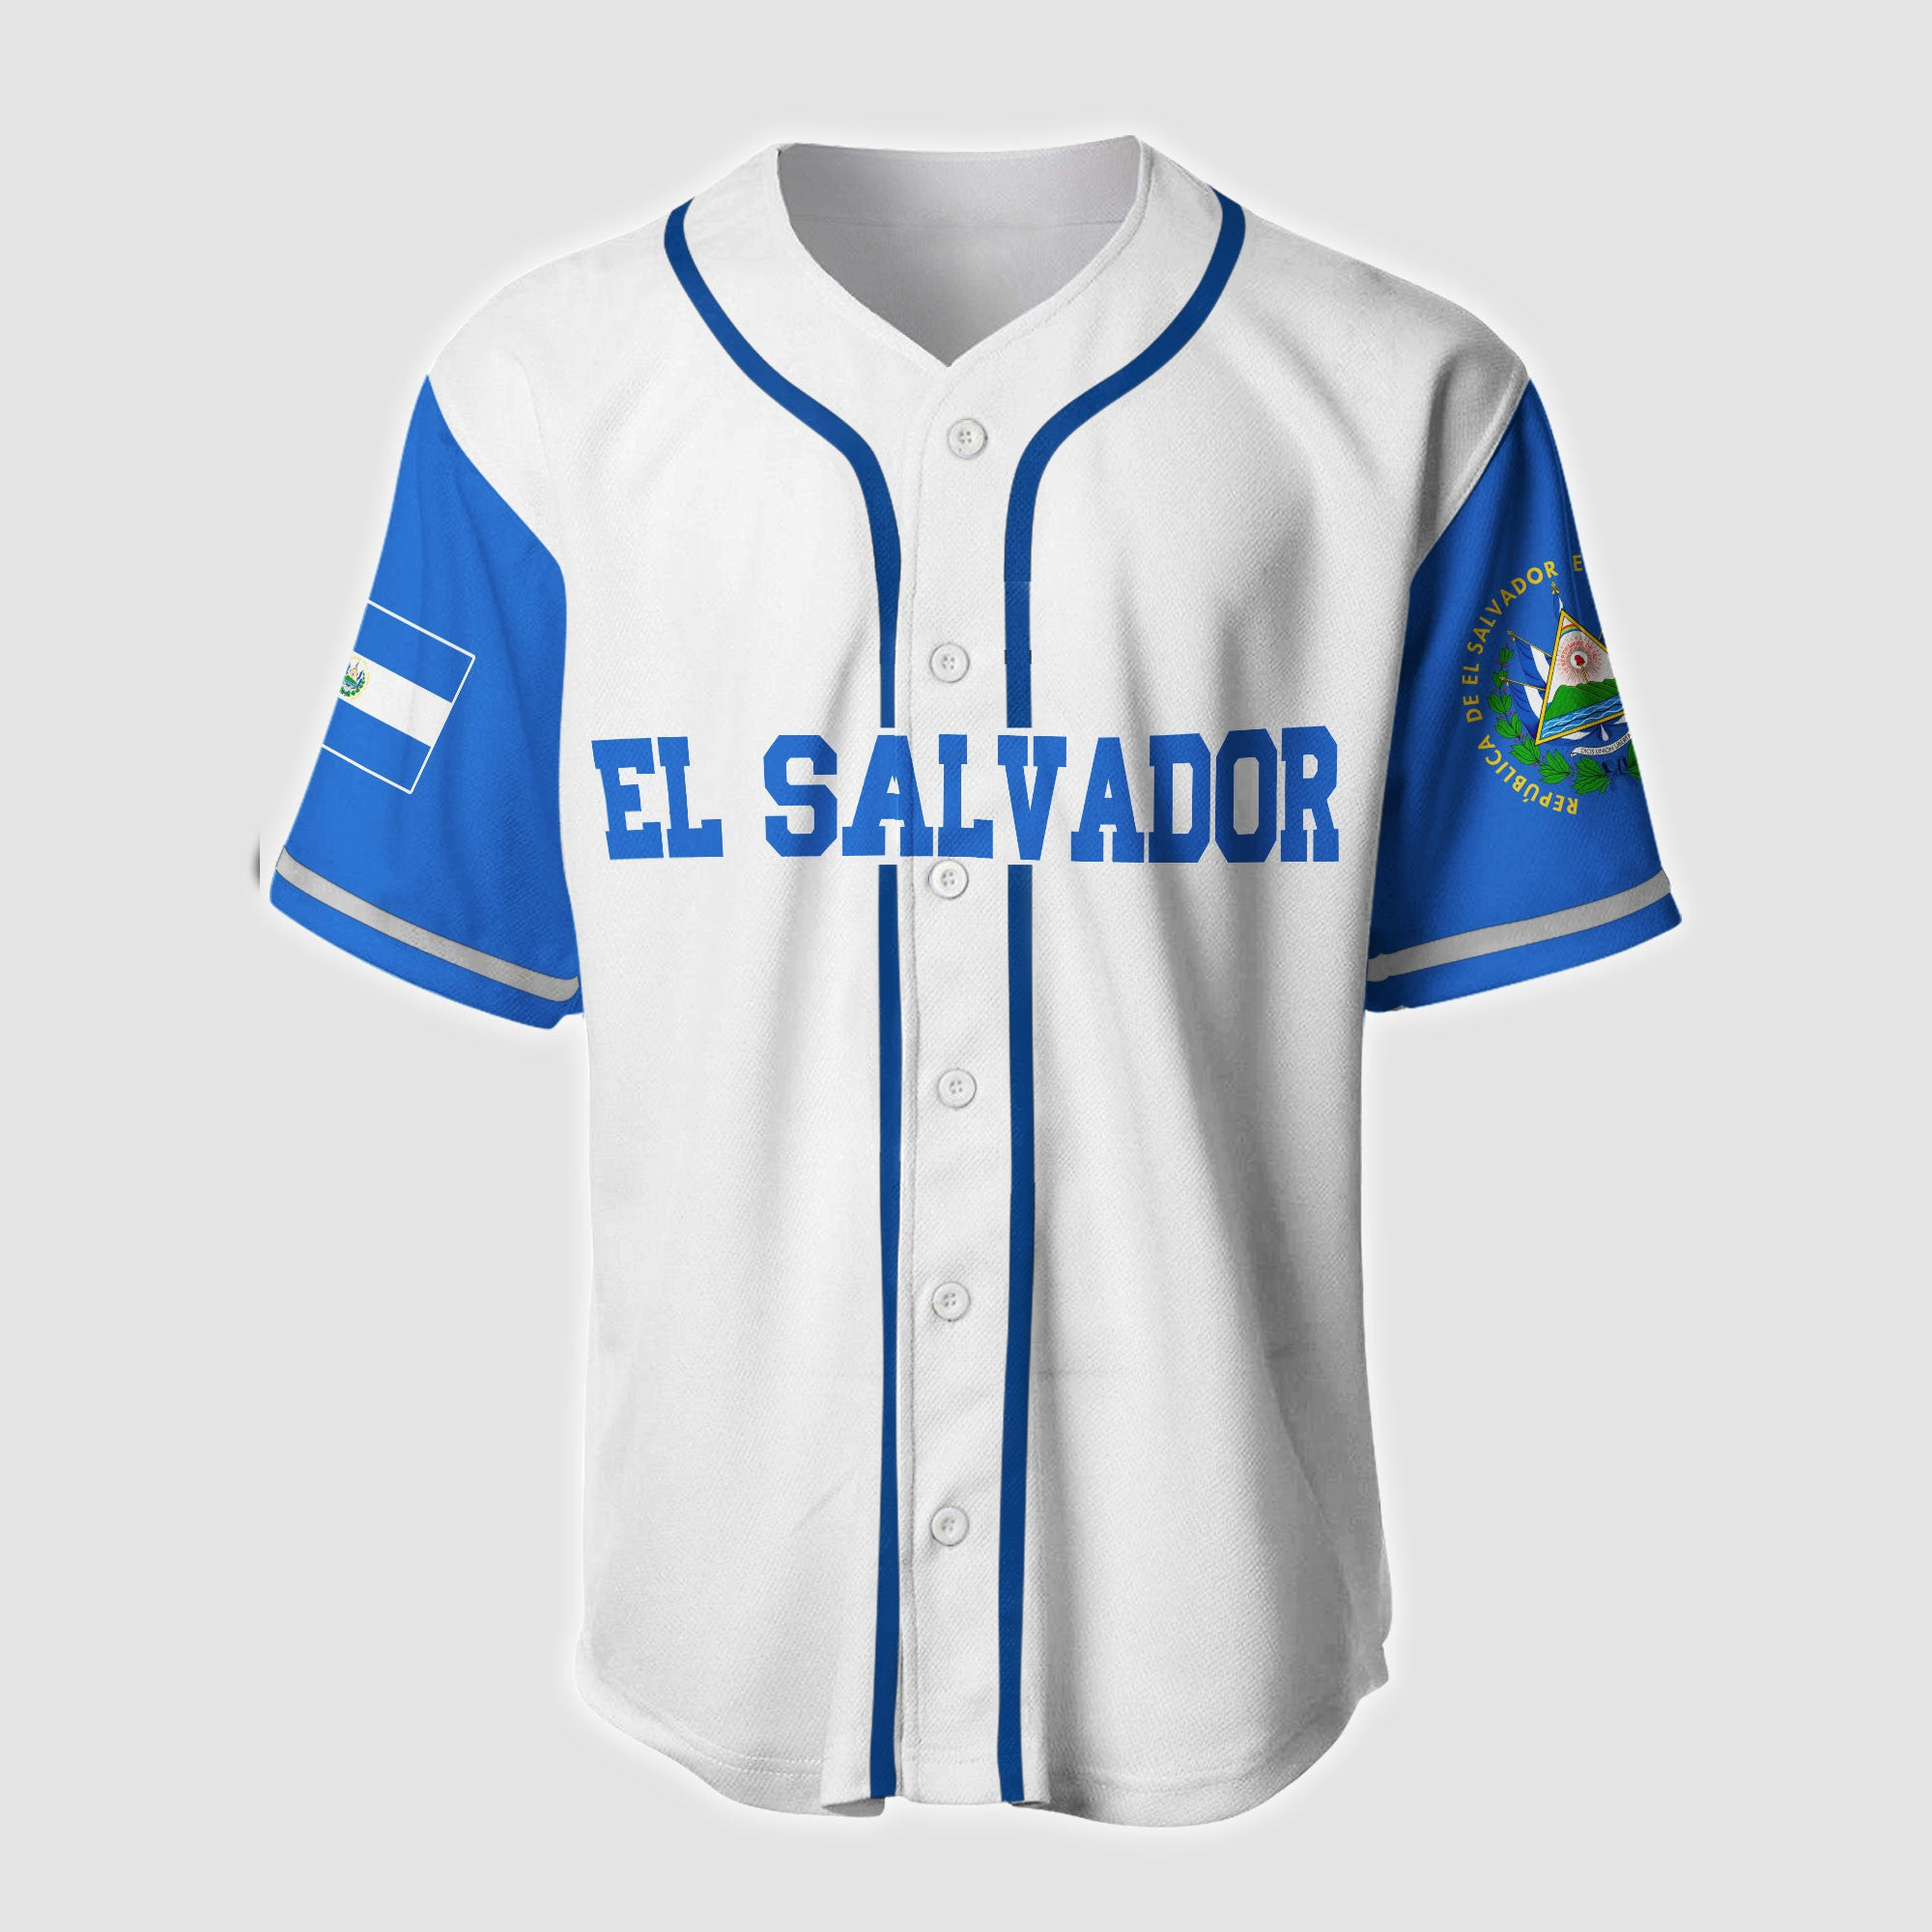 El Salvador Skull Baseball Jersey, Unisex Jersey Shirt for Men Women